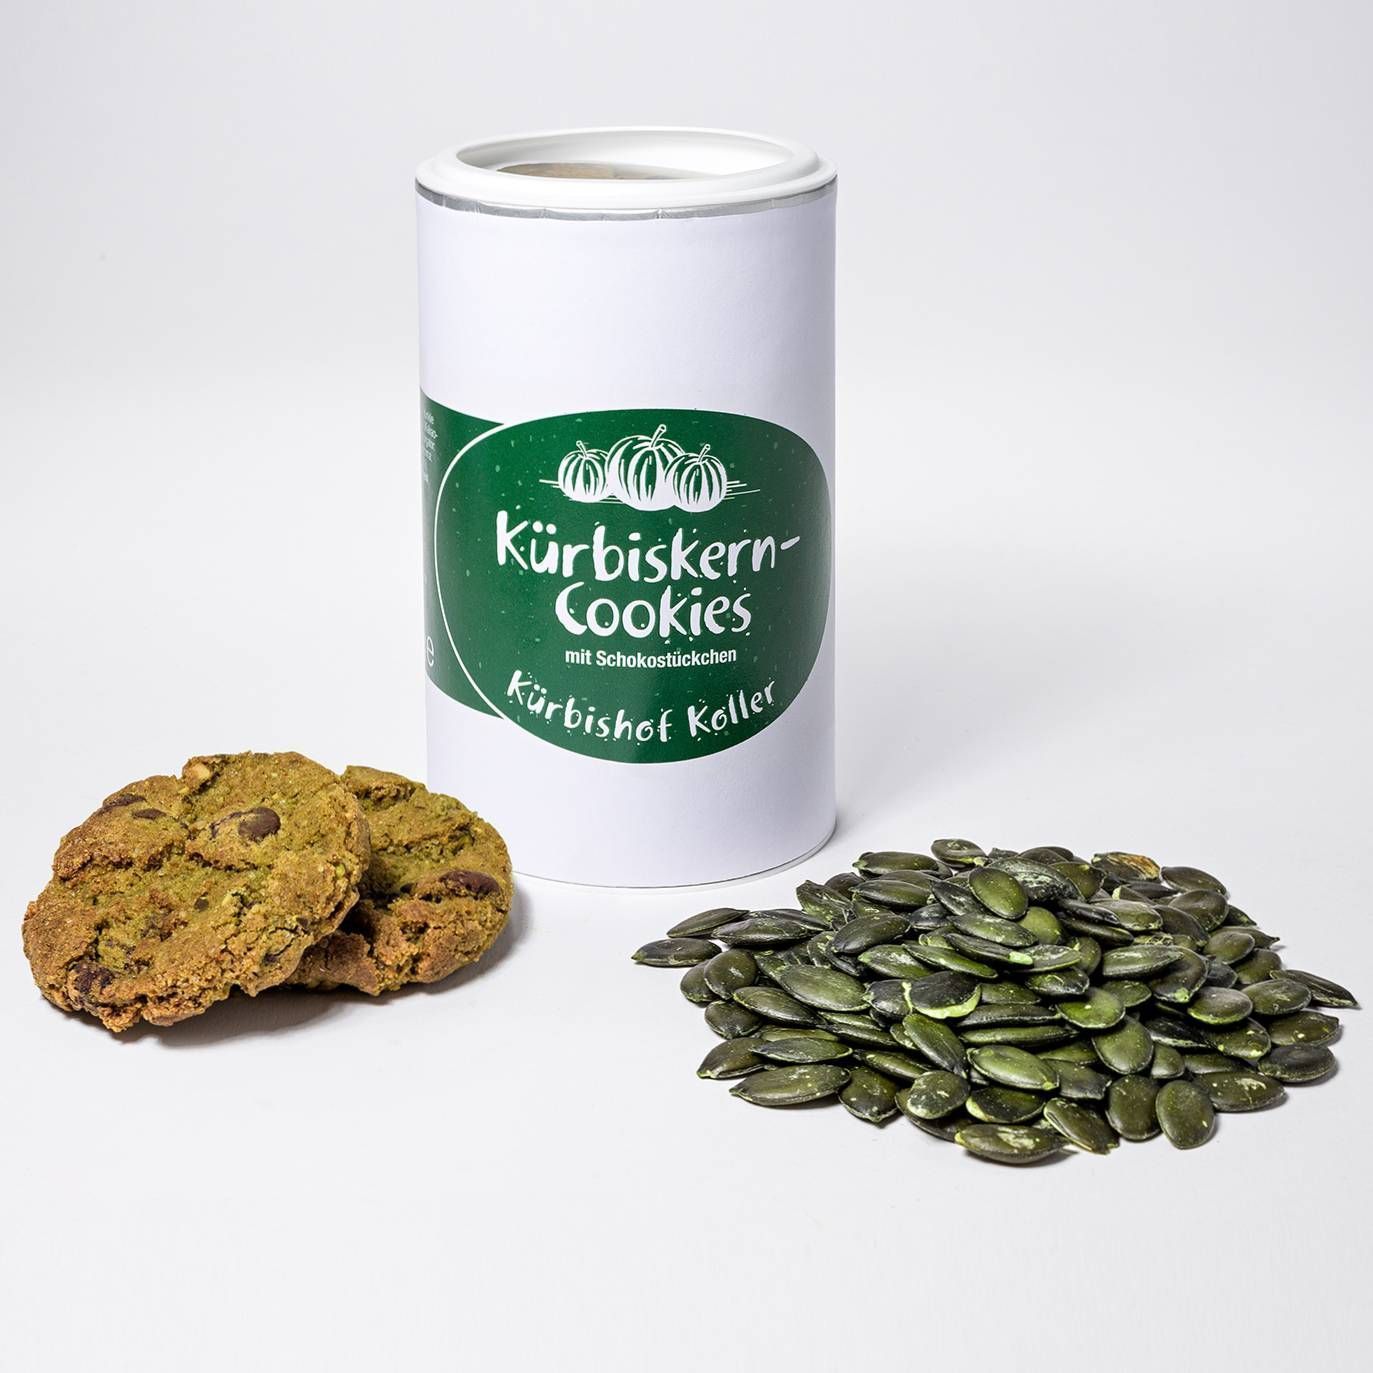 Kürbiskern-Cookies mit Schokostückchen auf den Kaiman Inseln